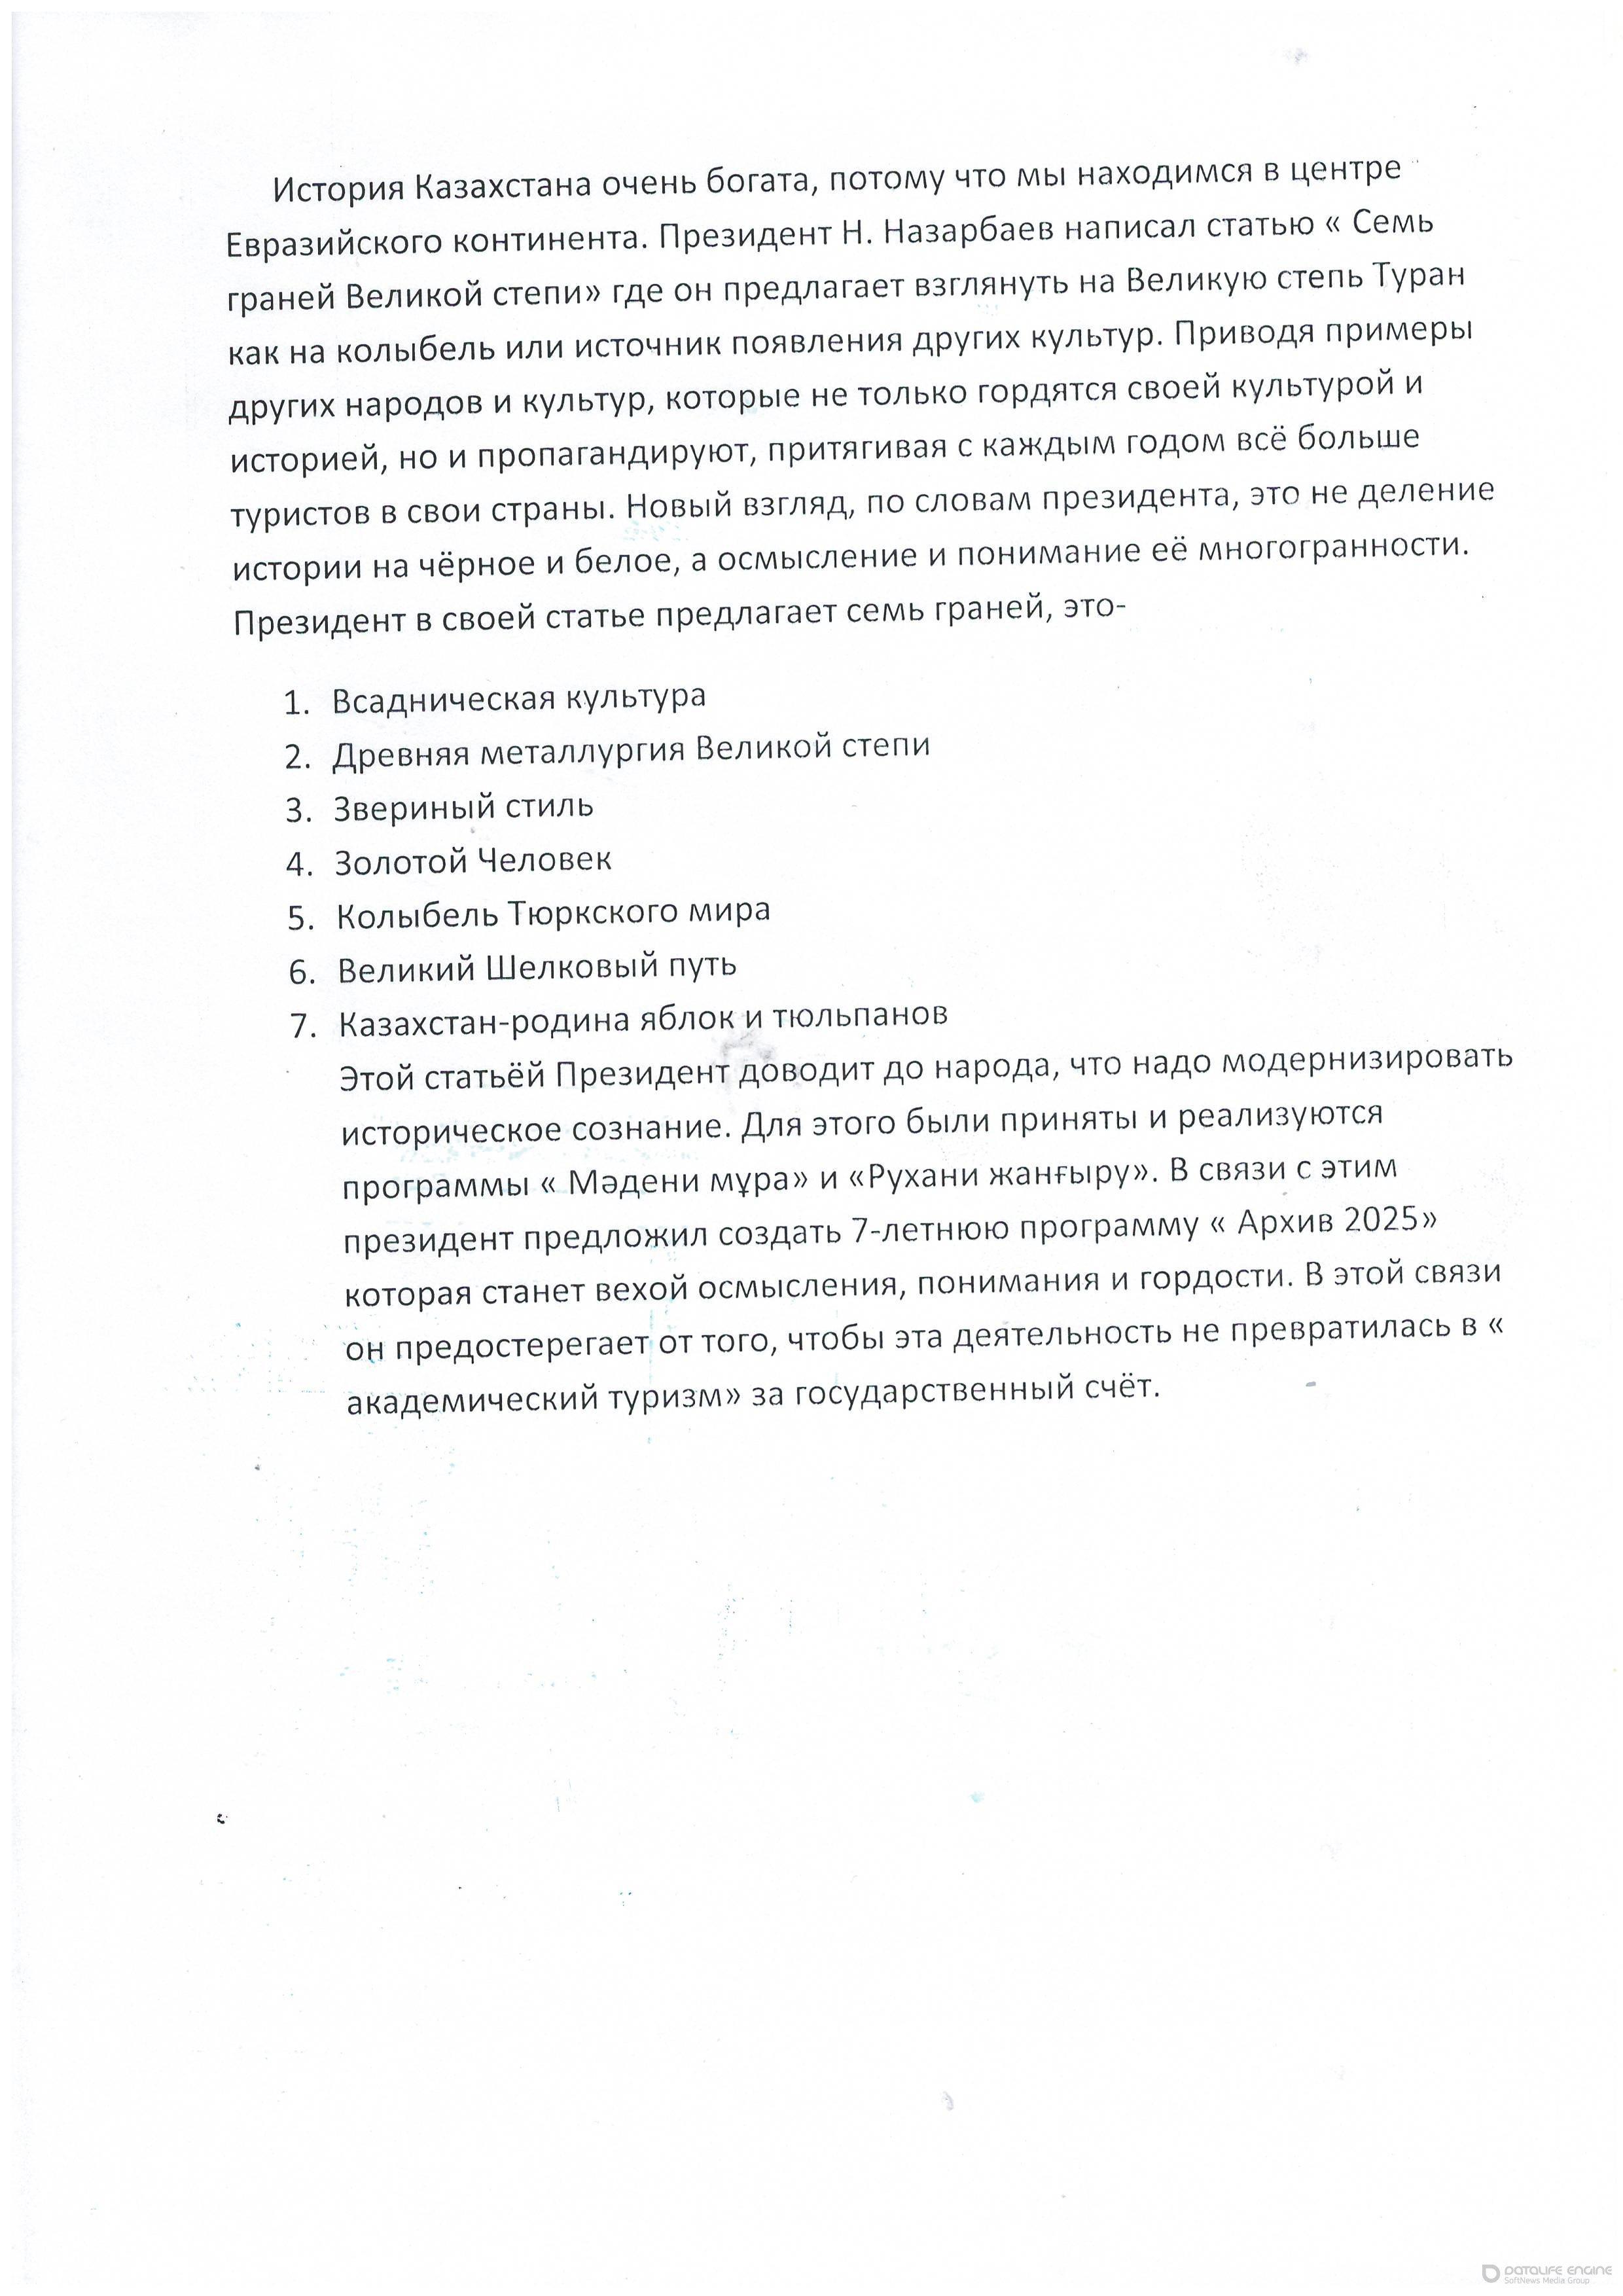 Отзыв о статье Н.Назарбаева "Семь граней великой степи"